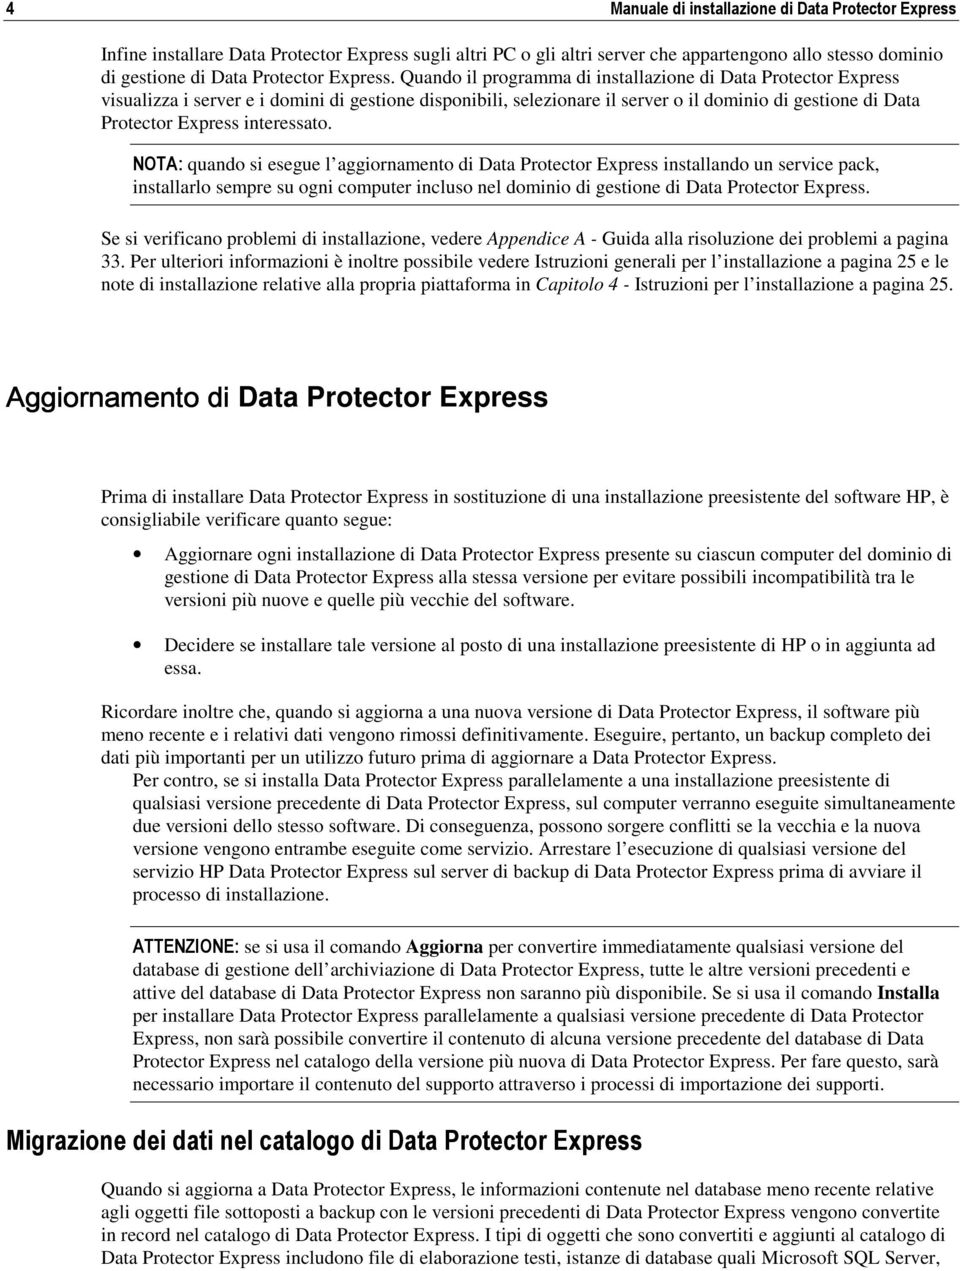 Quando il programma di installazione di Data Protector Express visualizza i server e i domini di gestione disponibili, selezionare il server o il dominio di gestione di Data Protector Express